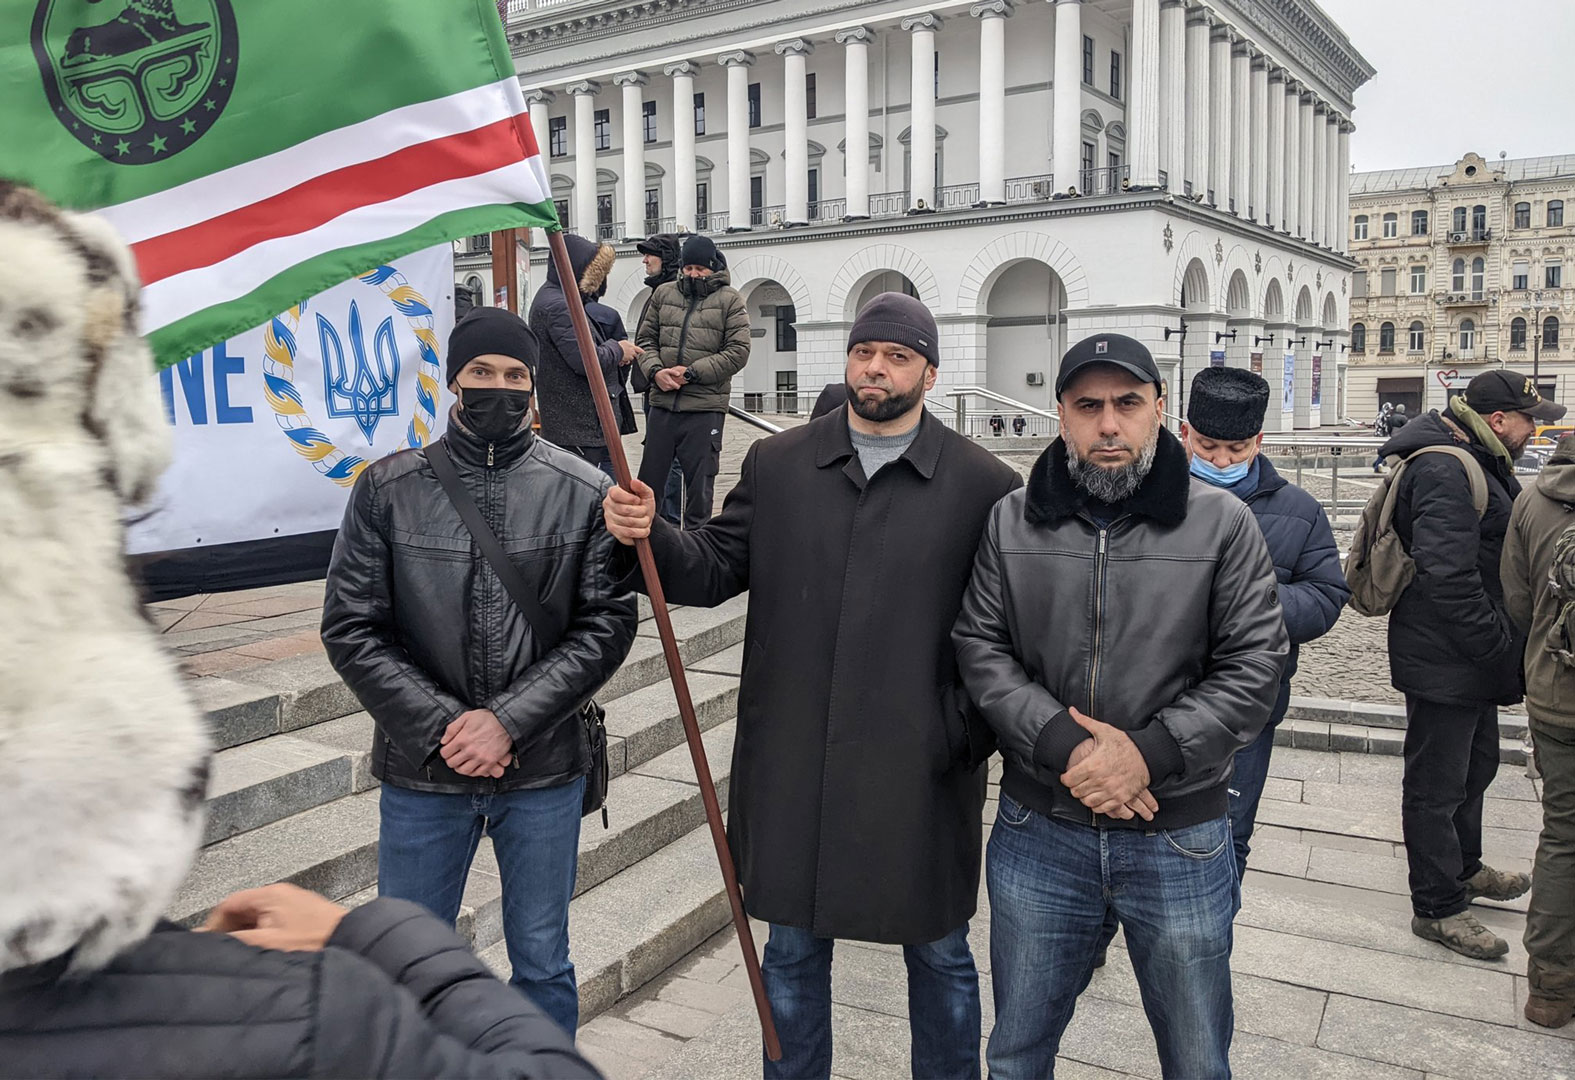 Chechens Fighting Chechens in Ukraine